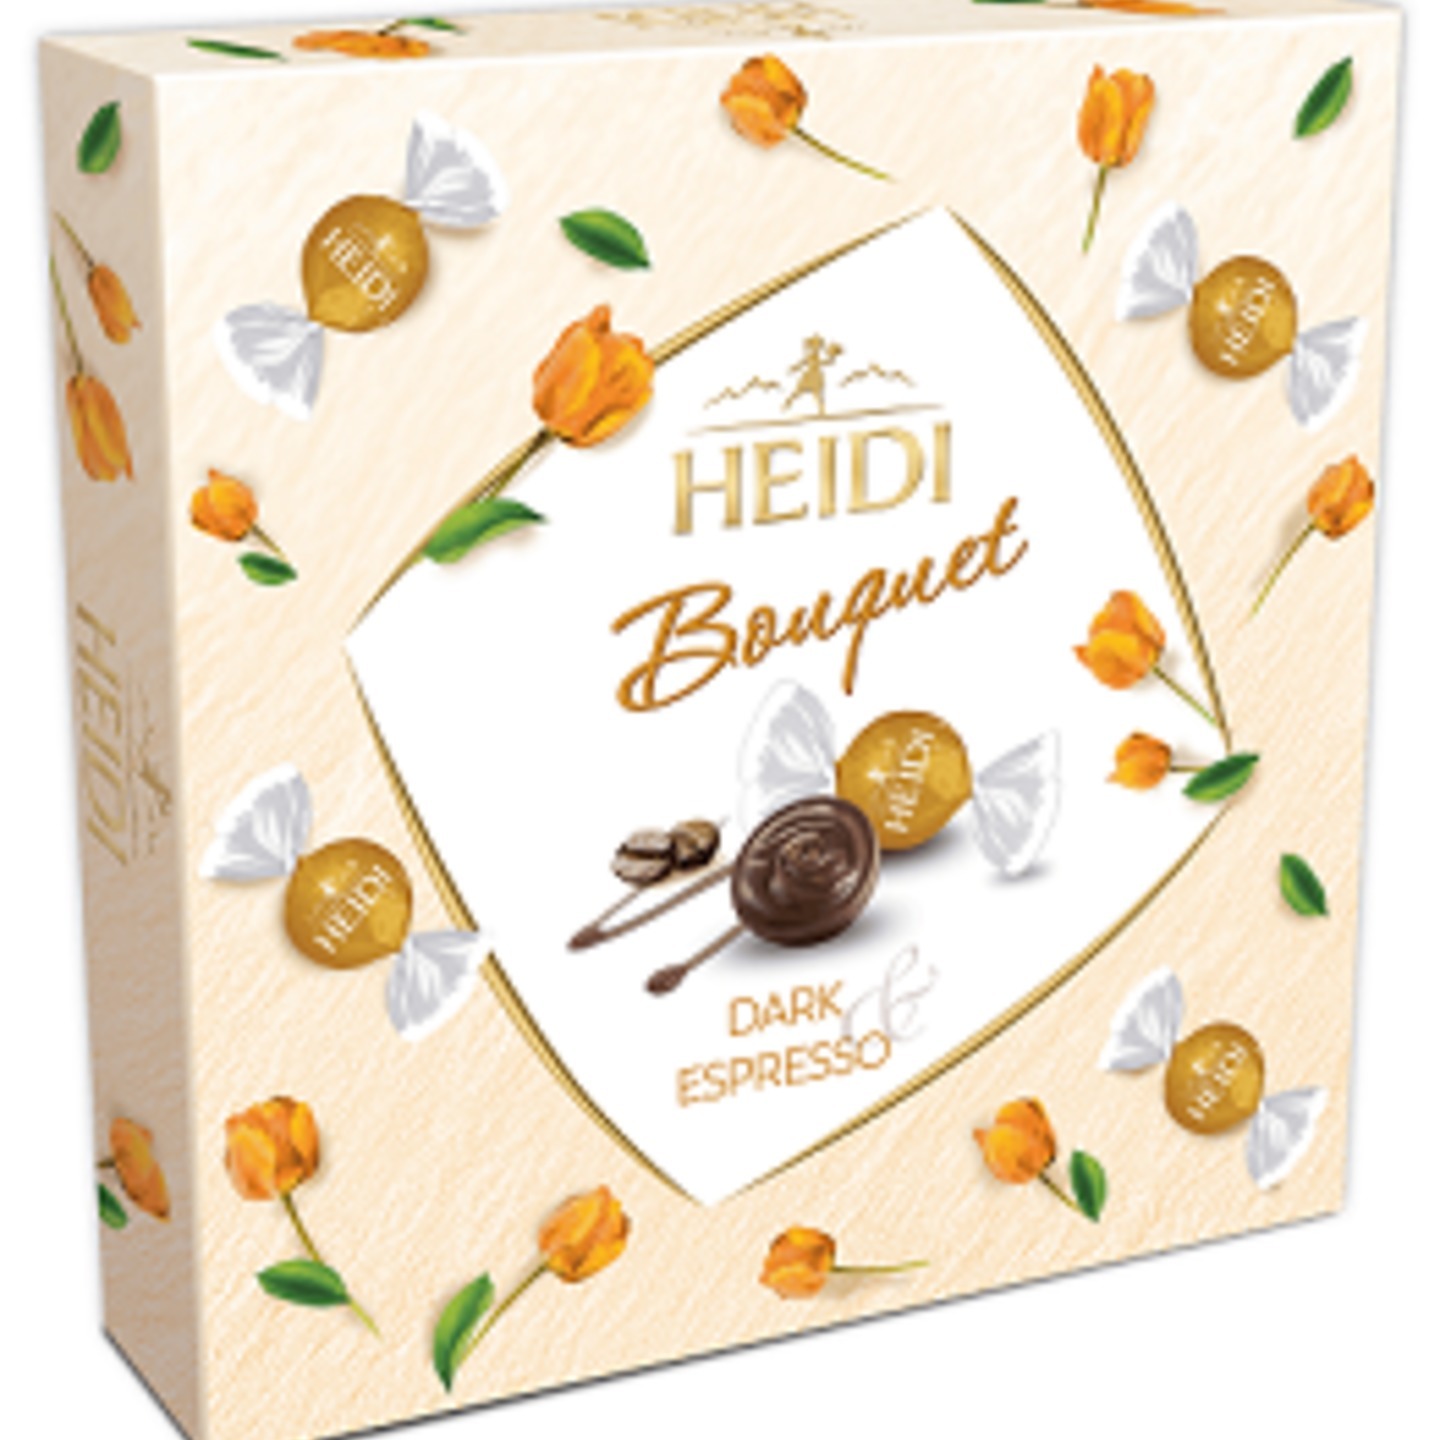 Heidi Bouquet Premium Dark Espresso Chocolate 220gm